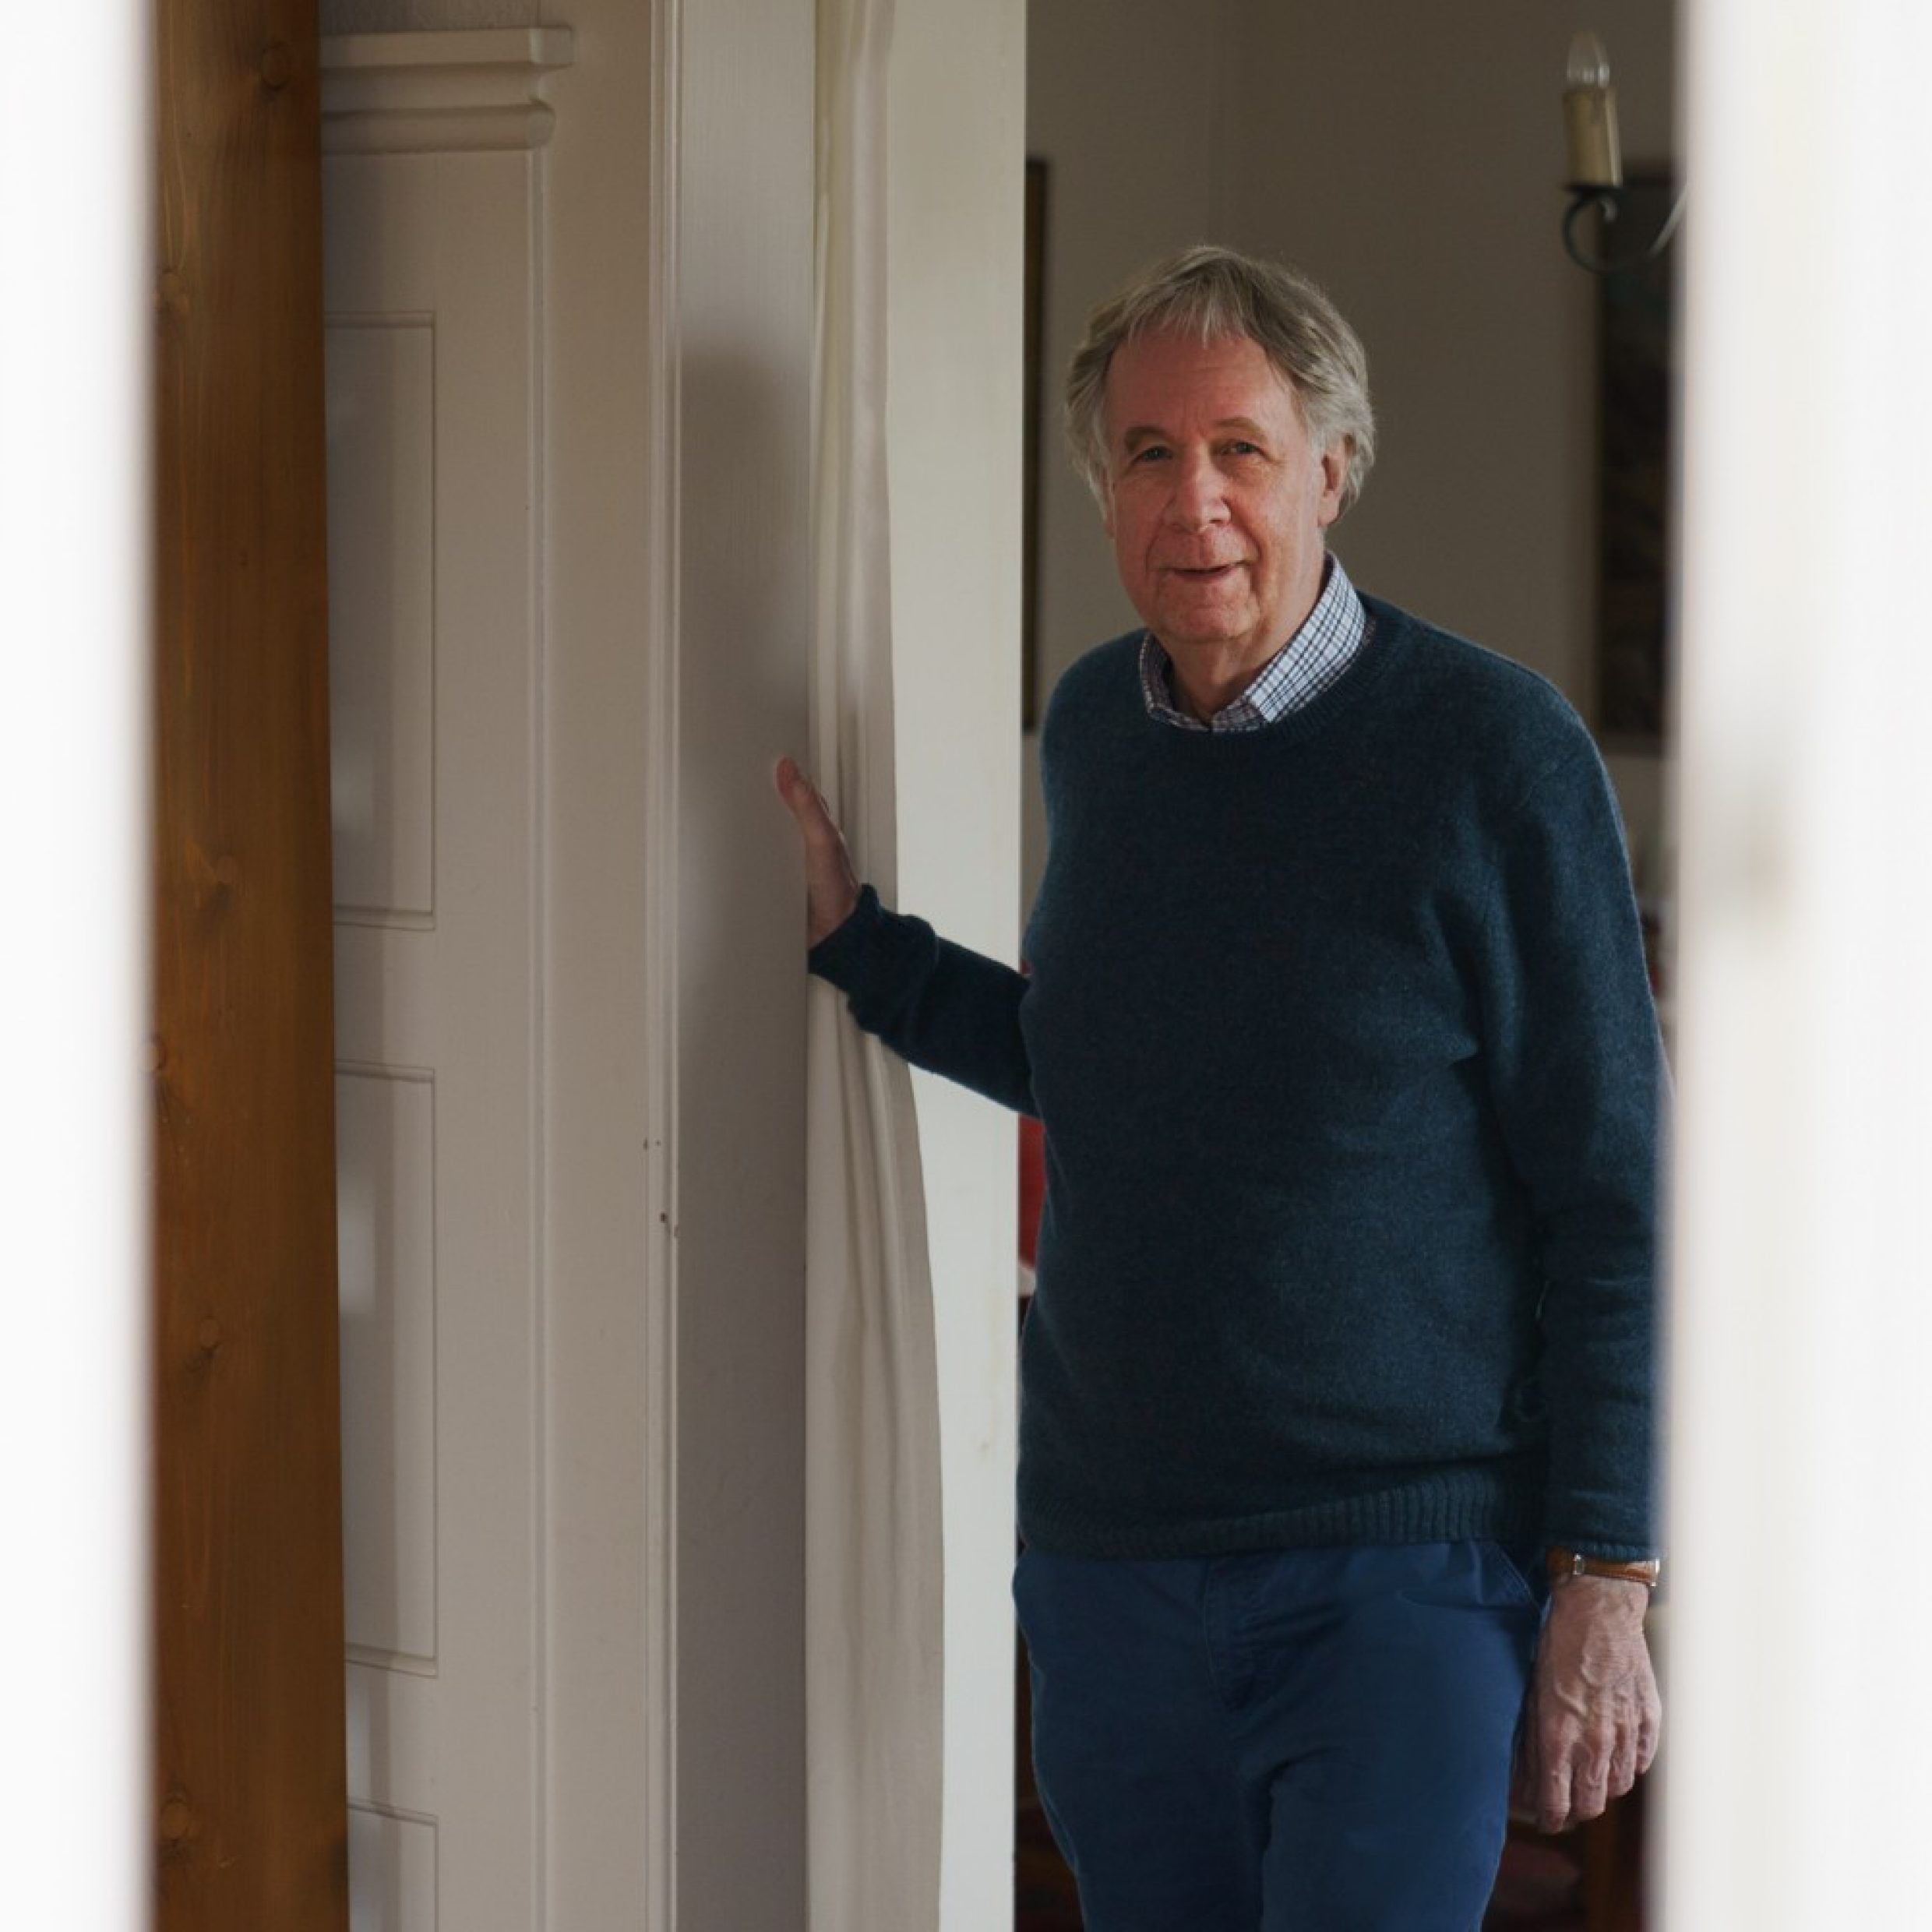 Un uomo anziano appoggiato allo stipite della porta guarda verso l’obiettivo. Indossa una camicia e sopra un maglione blu.